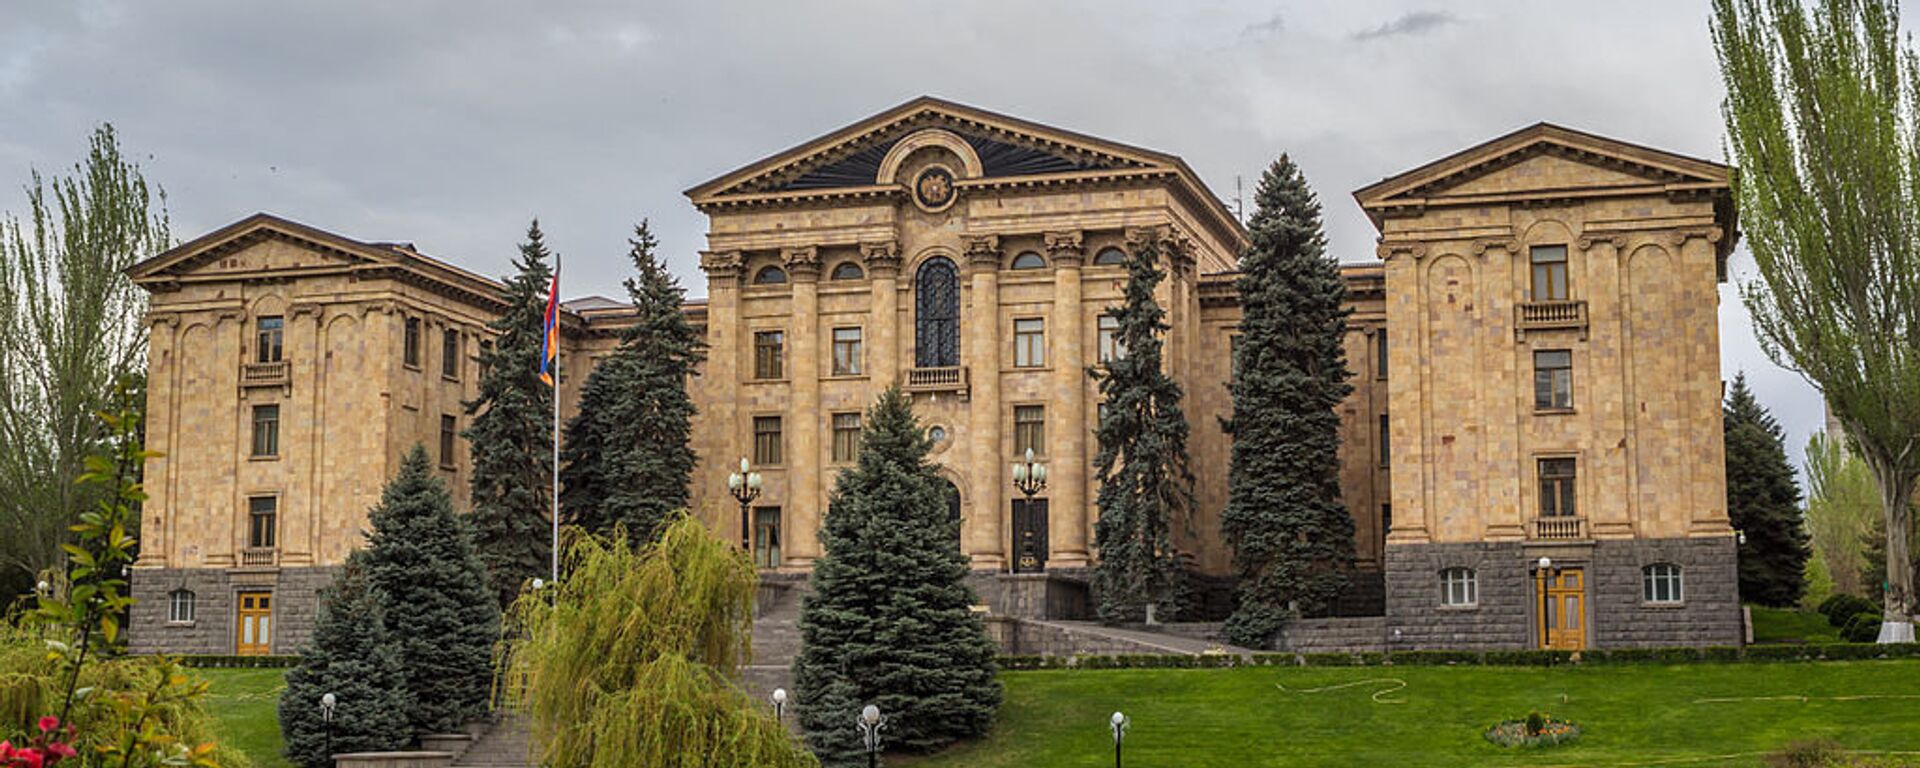 Здание Национального собрания Армении - Sputnik Армения, 1920, 09.06.2021